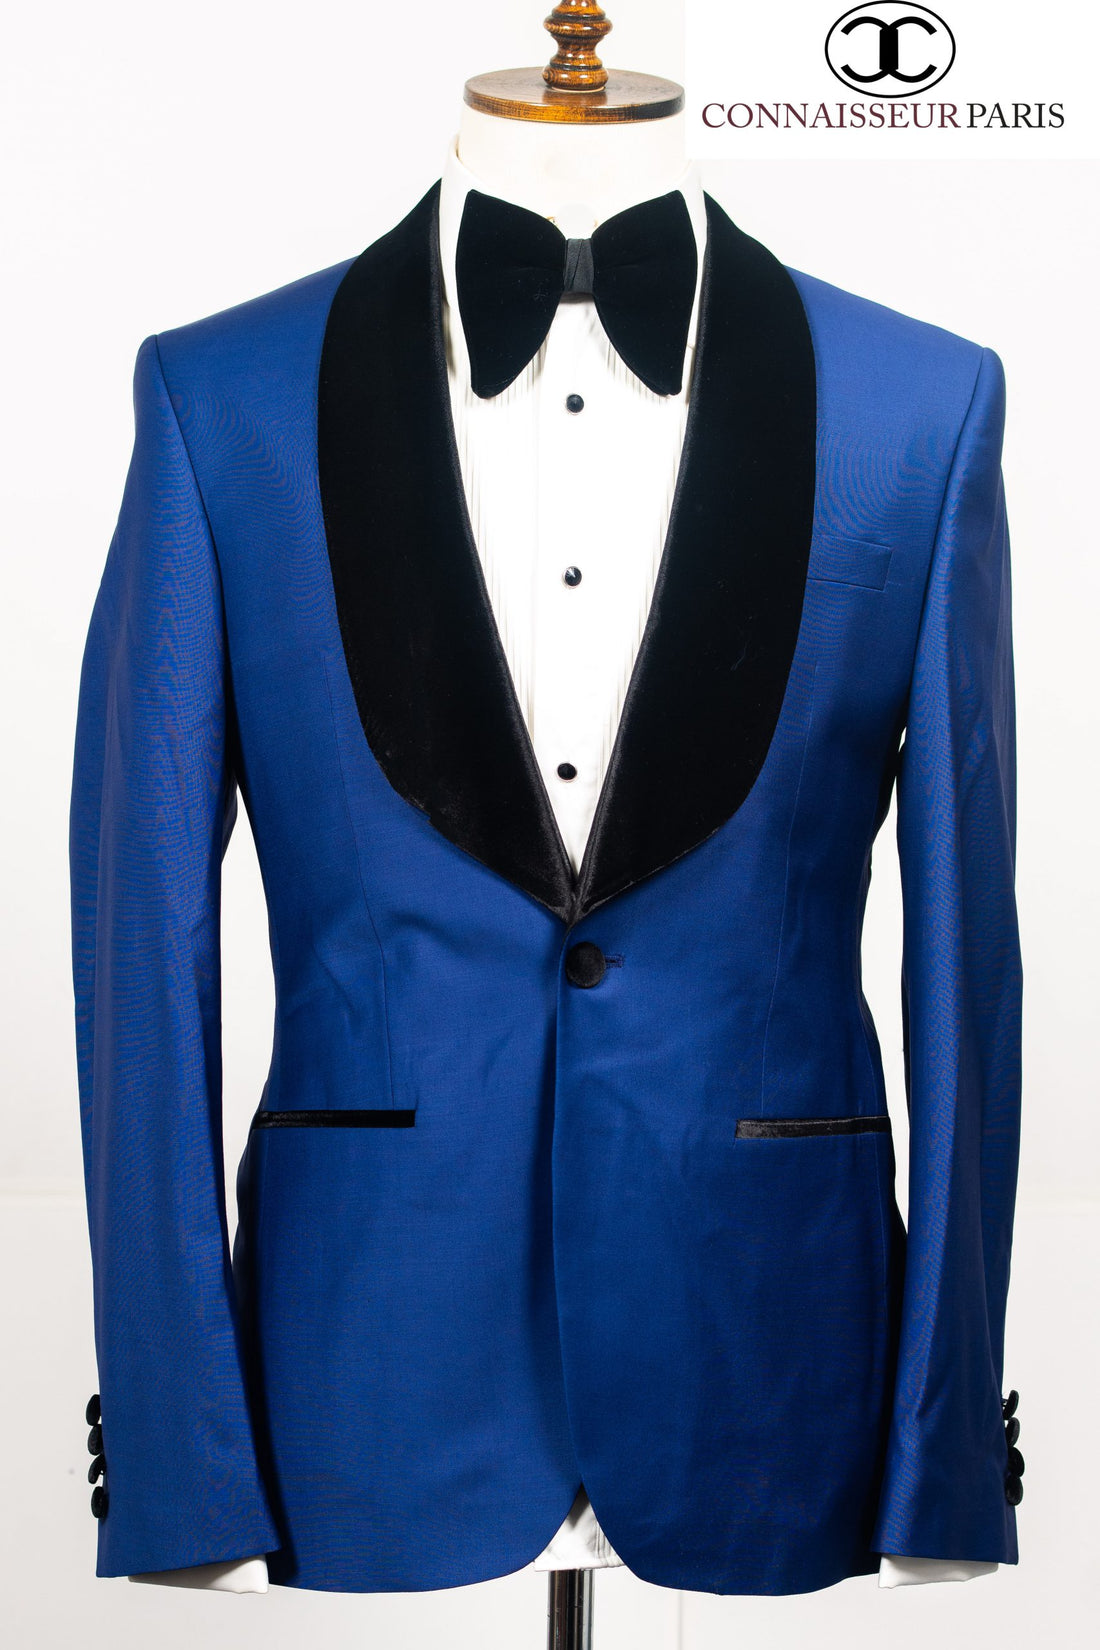 Connaisseur - Royal Blue 2-piece slim fit tuxedo with black velvet shawl lapel